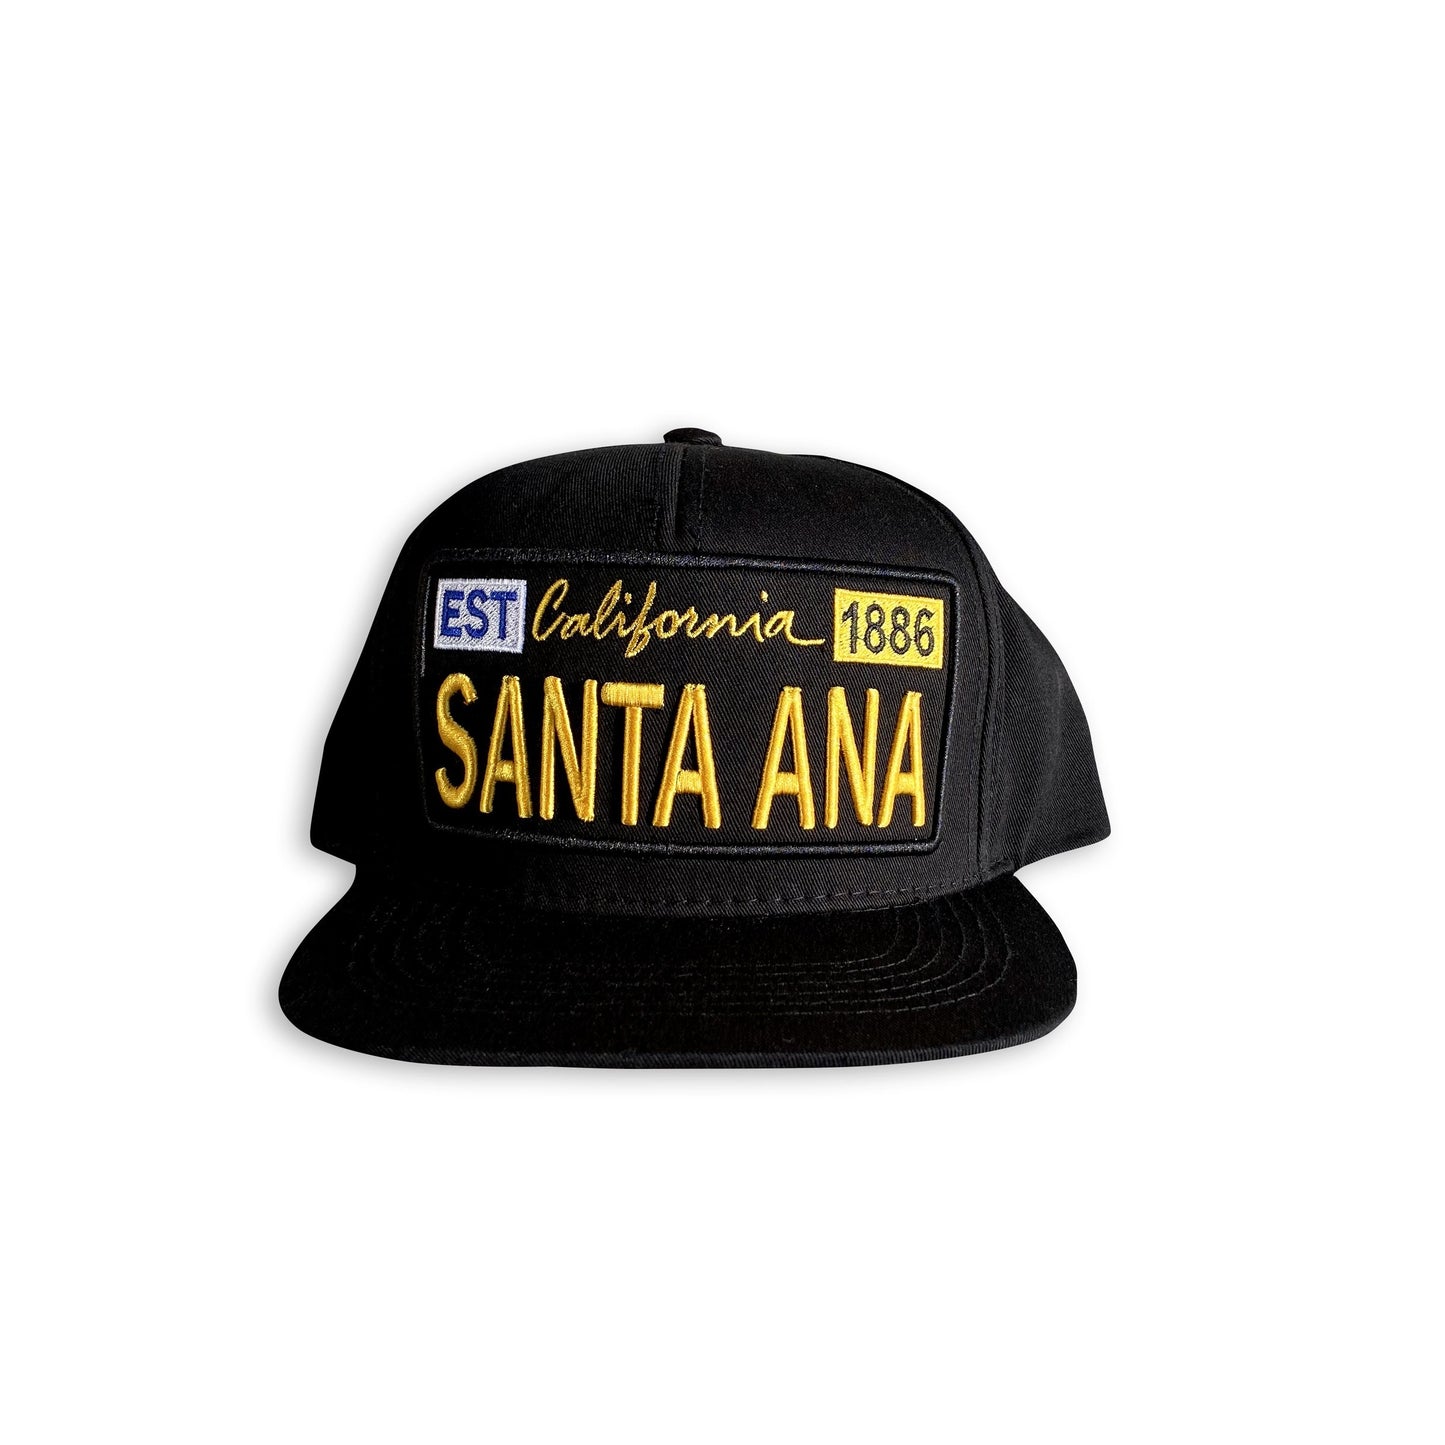 Santa Ana License Plate Hat